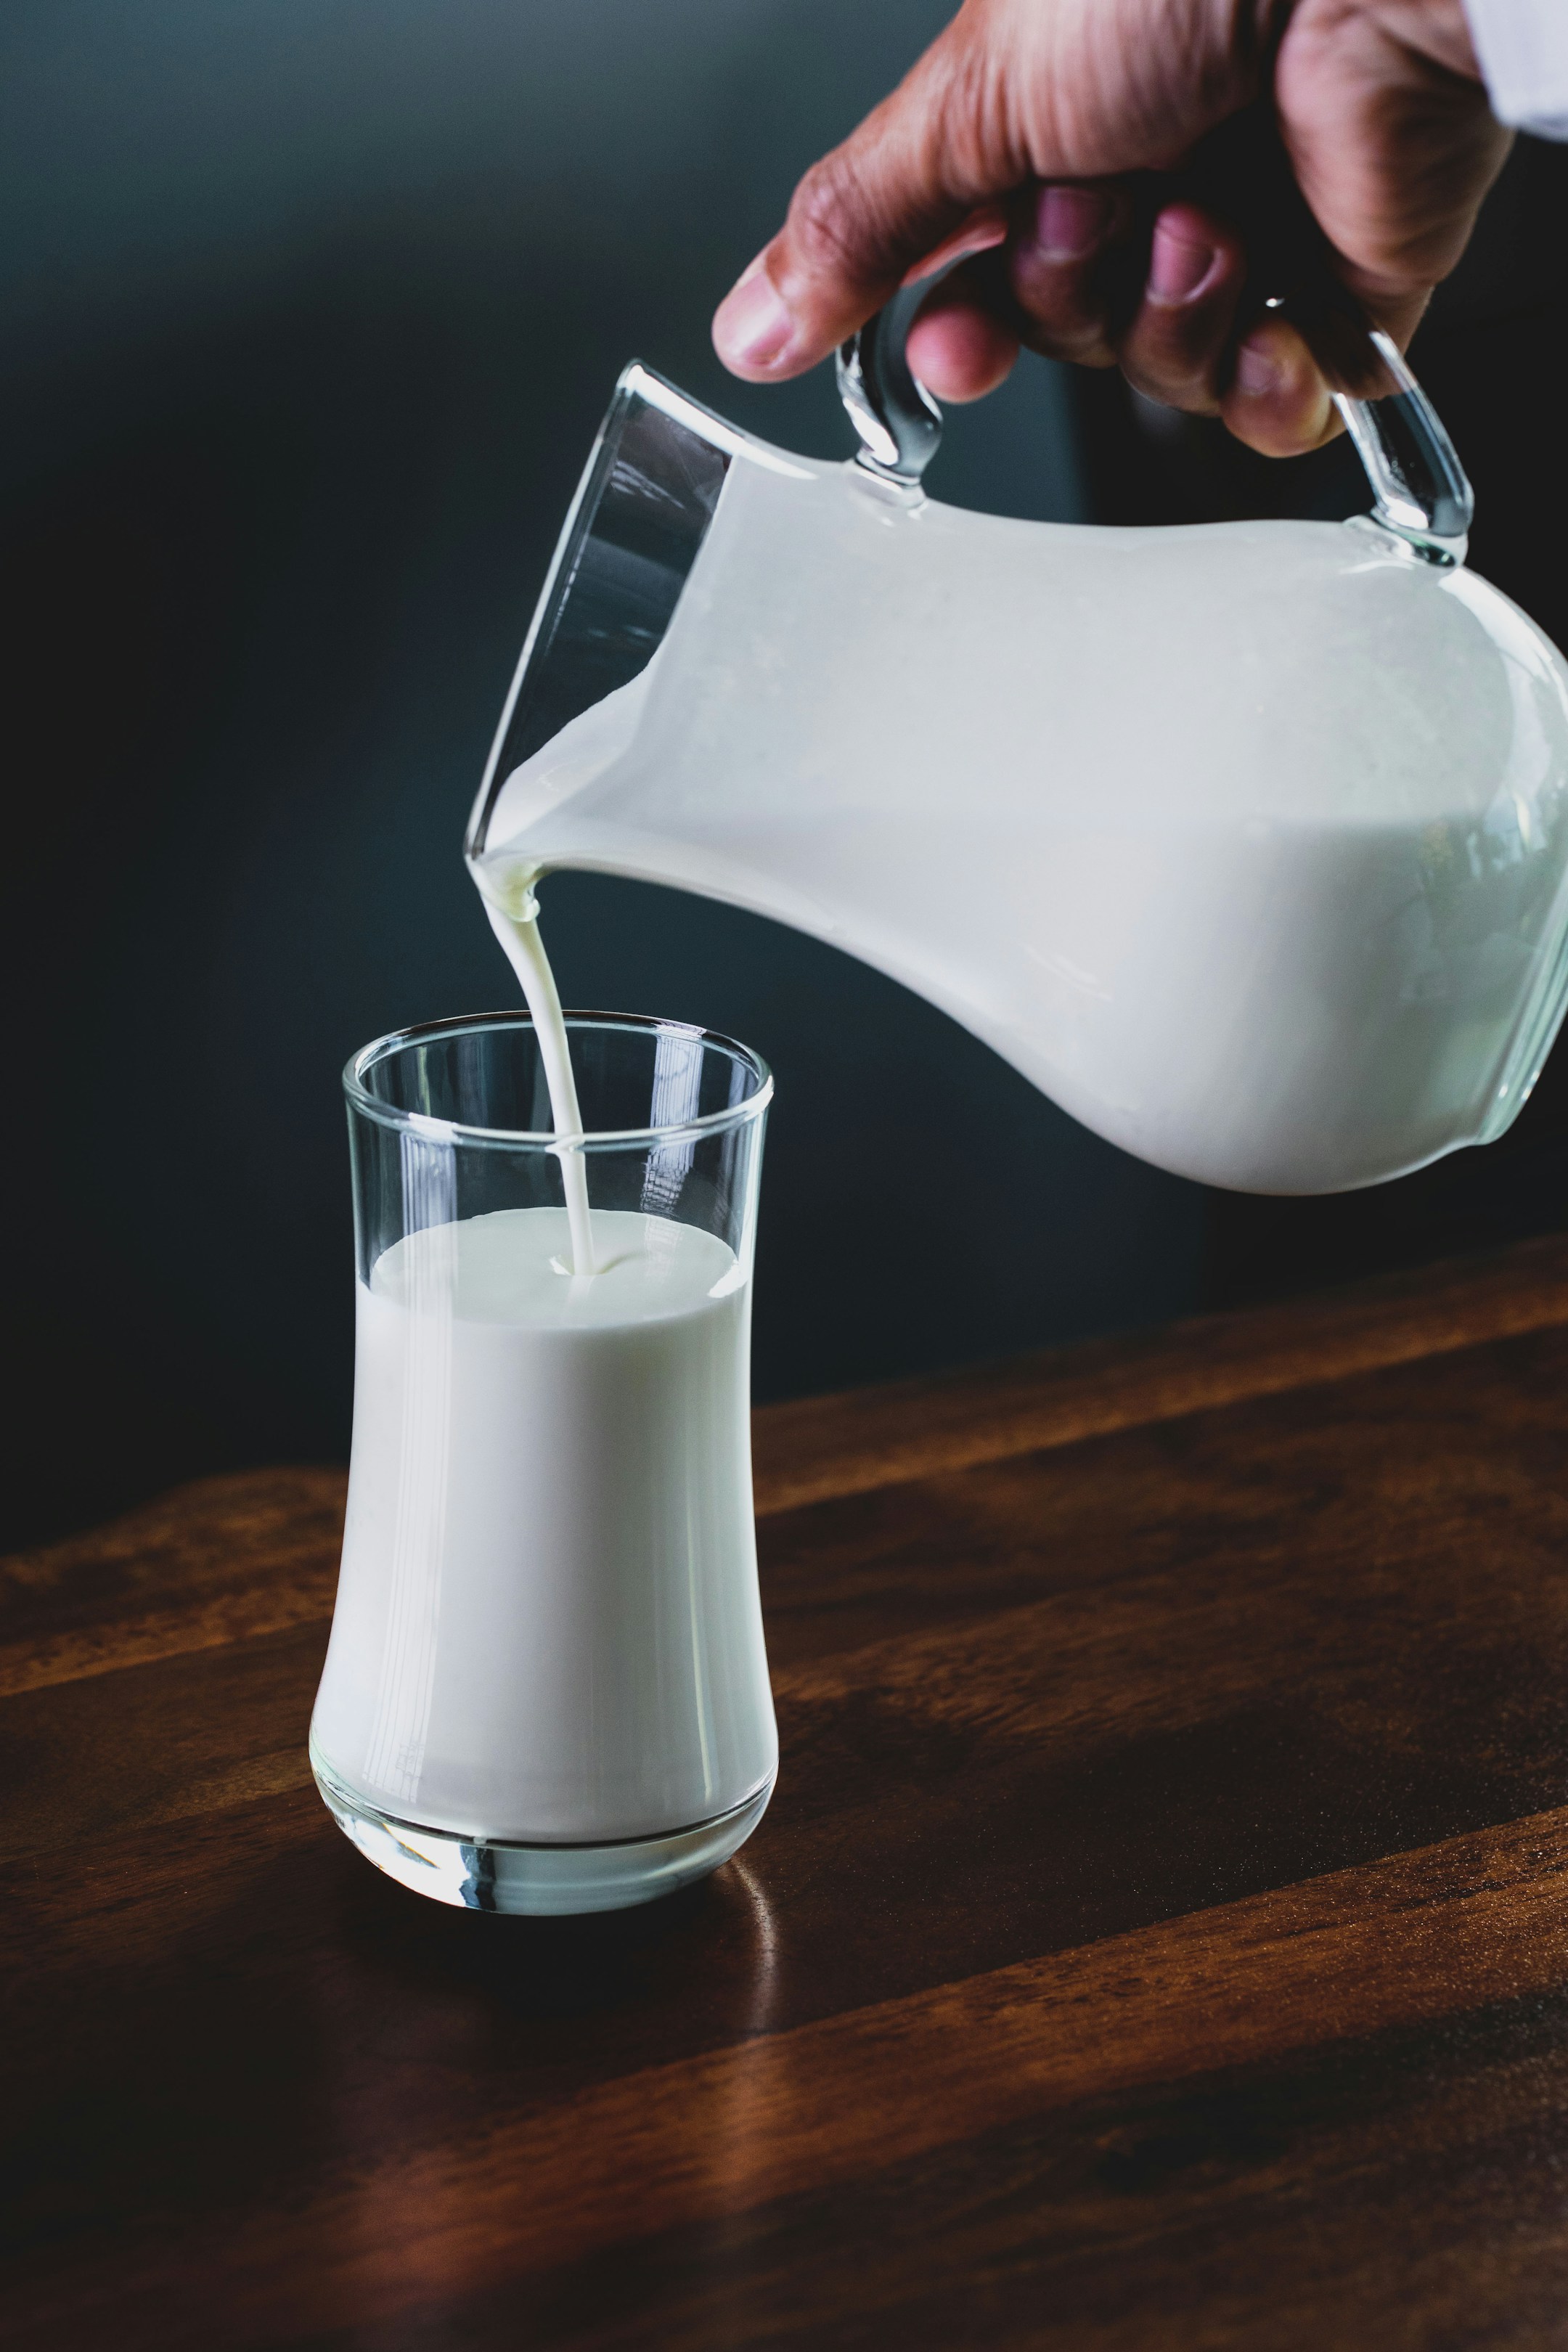 इन 5 तरीकों से चेक करें दूध की शुद्धता